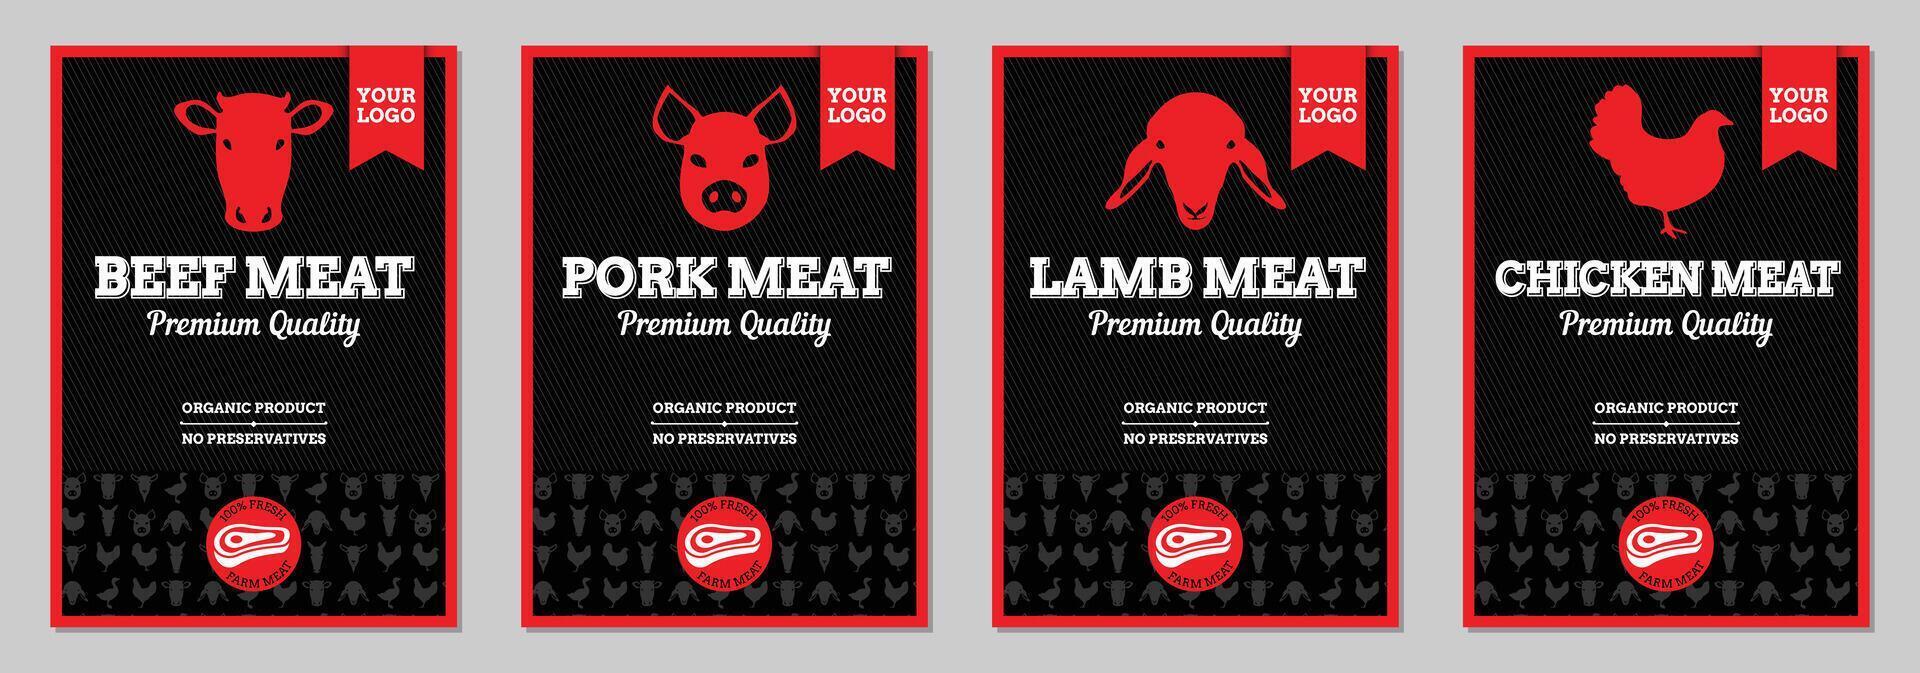 rundvlees, varkensvlees, lam en kip vlees verpakking gelabeld ontwerp vector